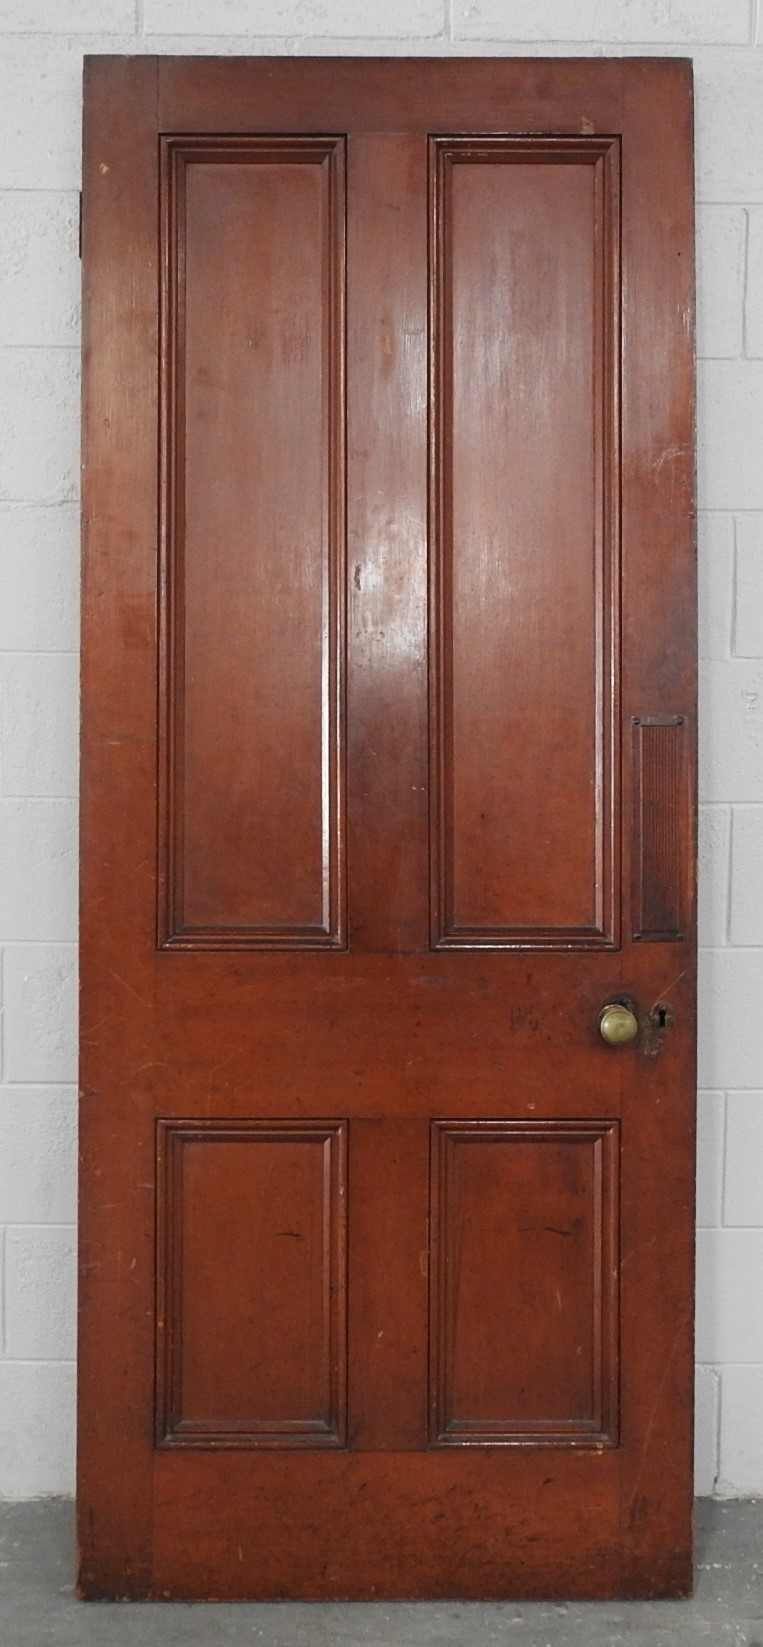 Wooden Villa 4 Panel Door - unpainted